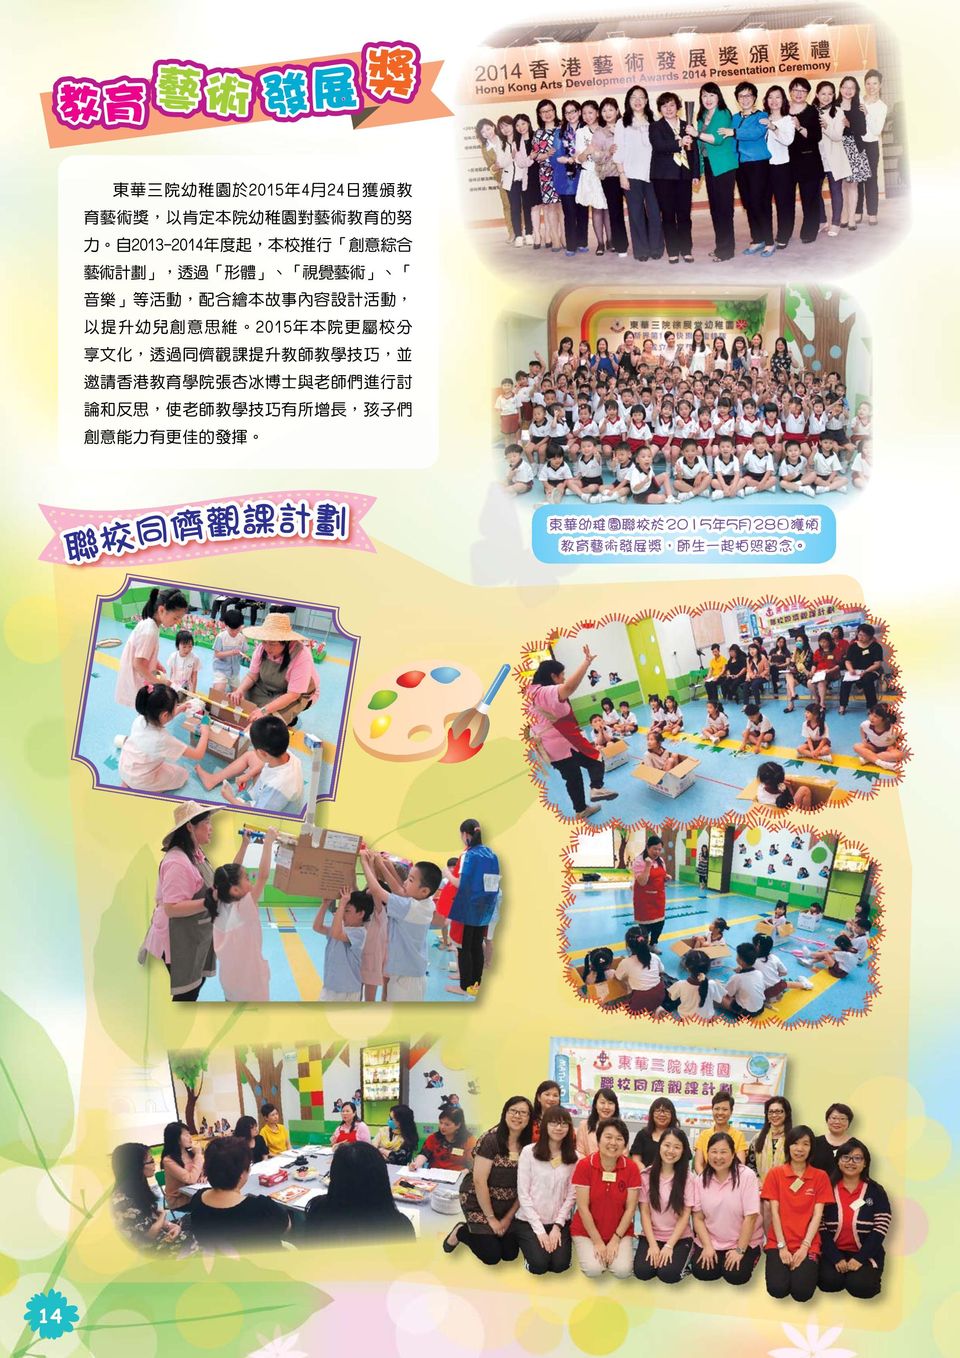 更 屬 校 分 享 文 化, 透 過 同 儕 觀 課 提 升 教 師 教 學 技 巧, 並 邀 請 香 港 教 育 學 院 張 杏 冰 博 士 與 老 師 們 進 行 討 論 和 反 思, 使 老 師 教 學 技 巧 有 所